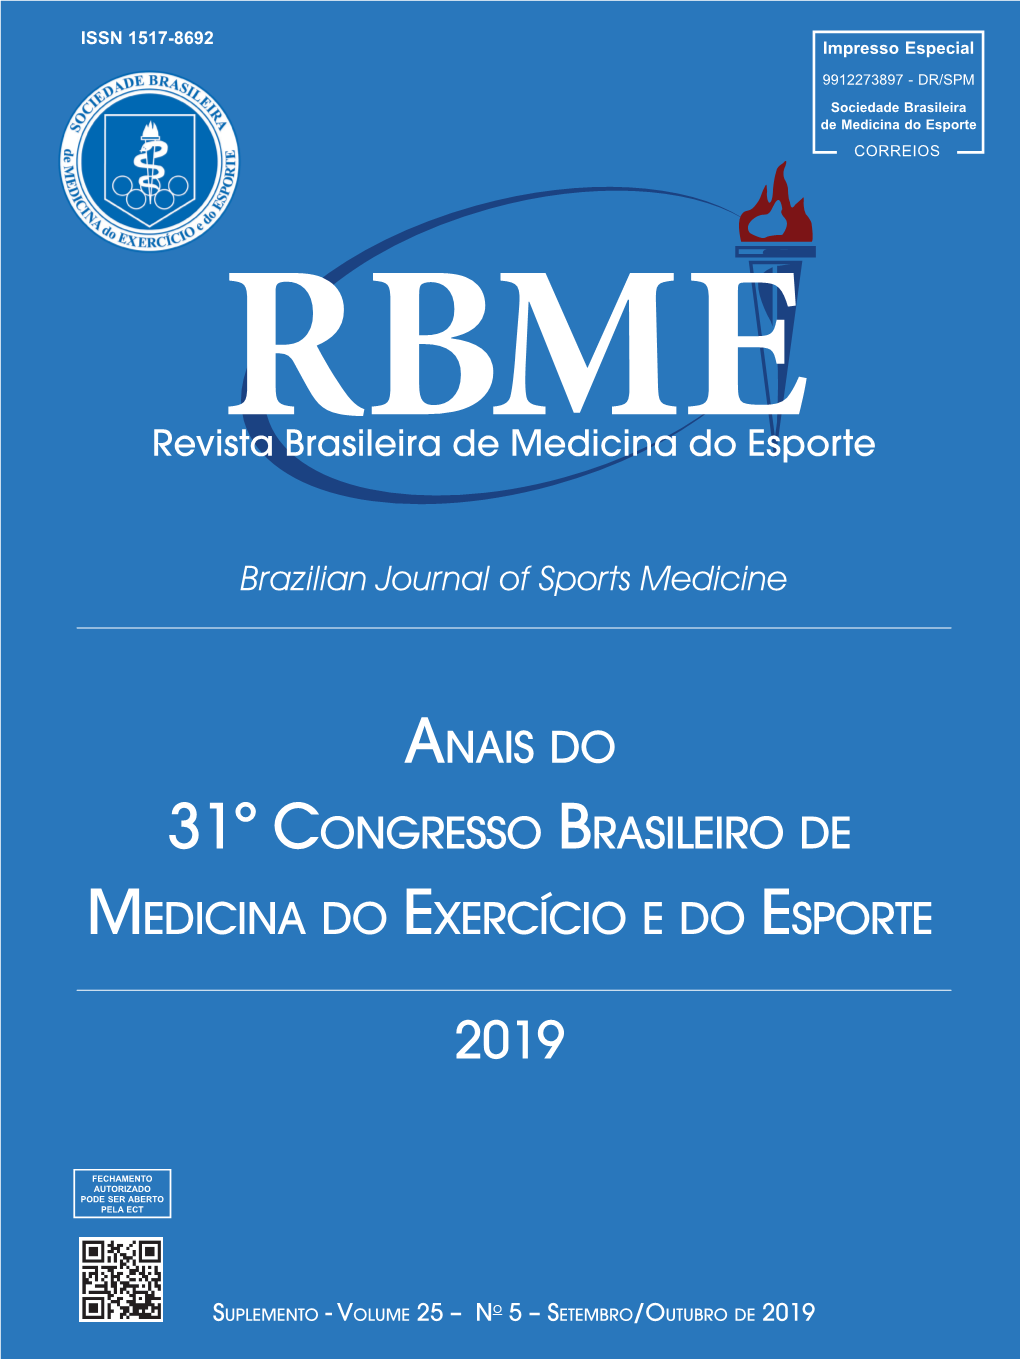 Anais Do 31º Congresso Brasileiro De Medicina Do Exercício E Do Esporte